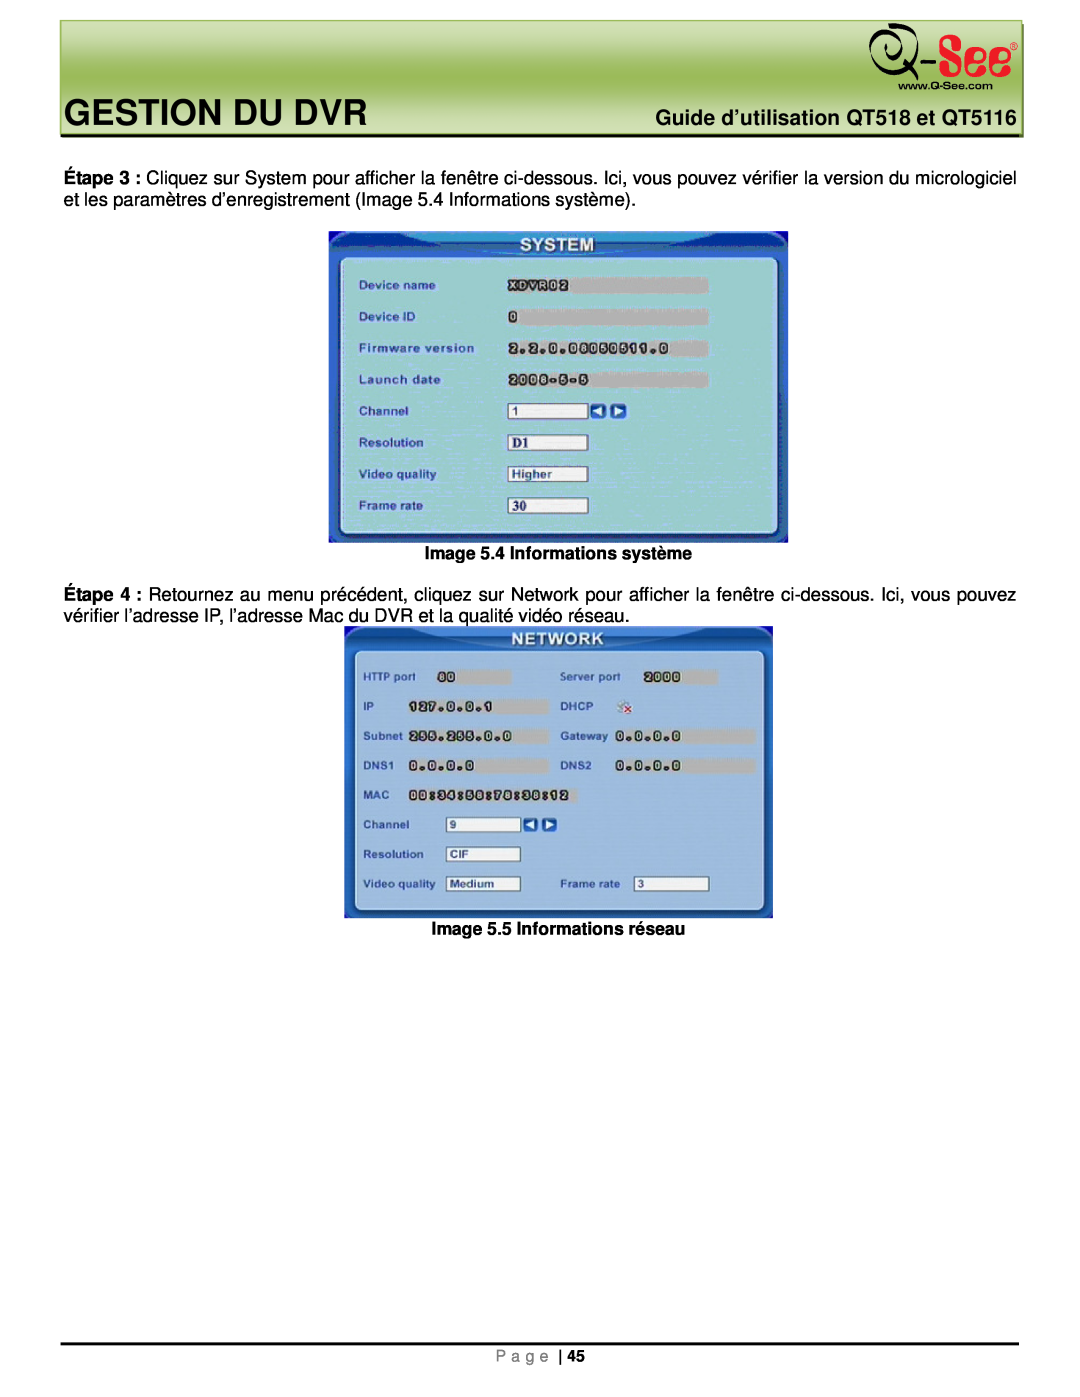 Q-See manual Gestion Du Dvr, Guide d’utilisation QT518 et QT5116, Image 5.4 Informations système 